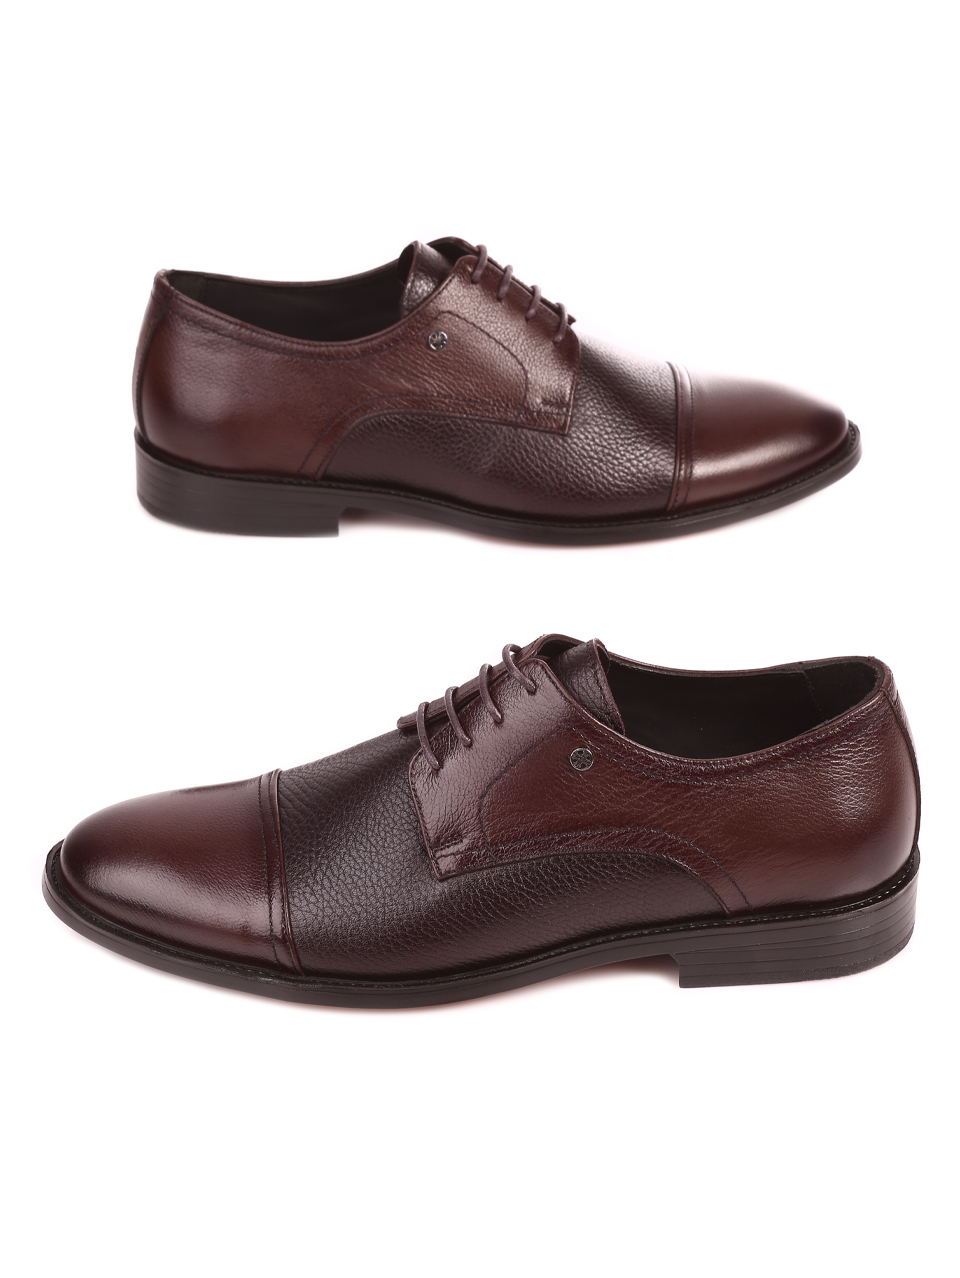 Eлегантни мъжки обувки от естествена кожа в кафяво 153-5843 brown K-1